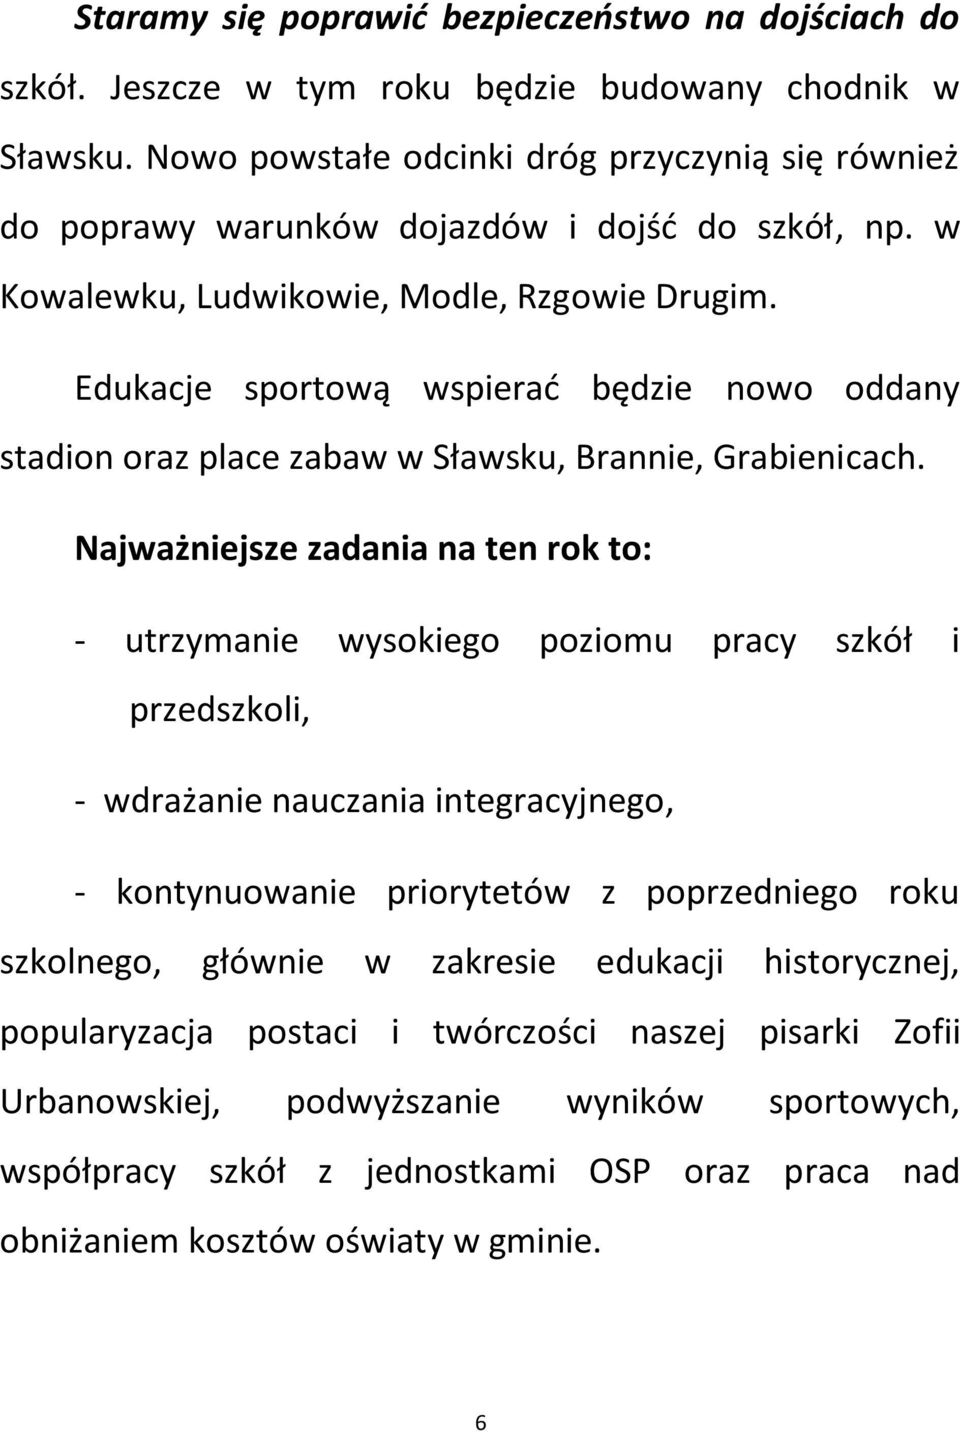 Edukacje sportową wspierać będzie nowo oddany stadion oraz place zabaw w Sławsku, Brannie, Grabienicach.